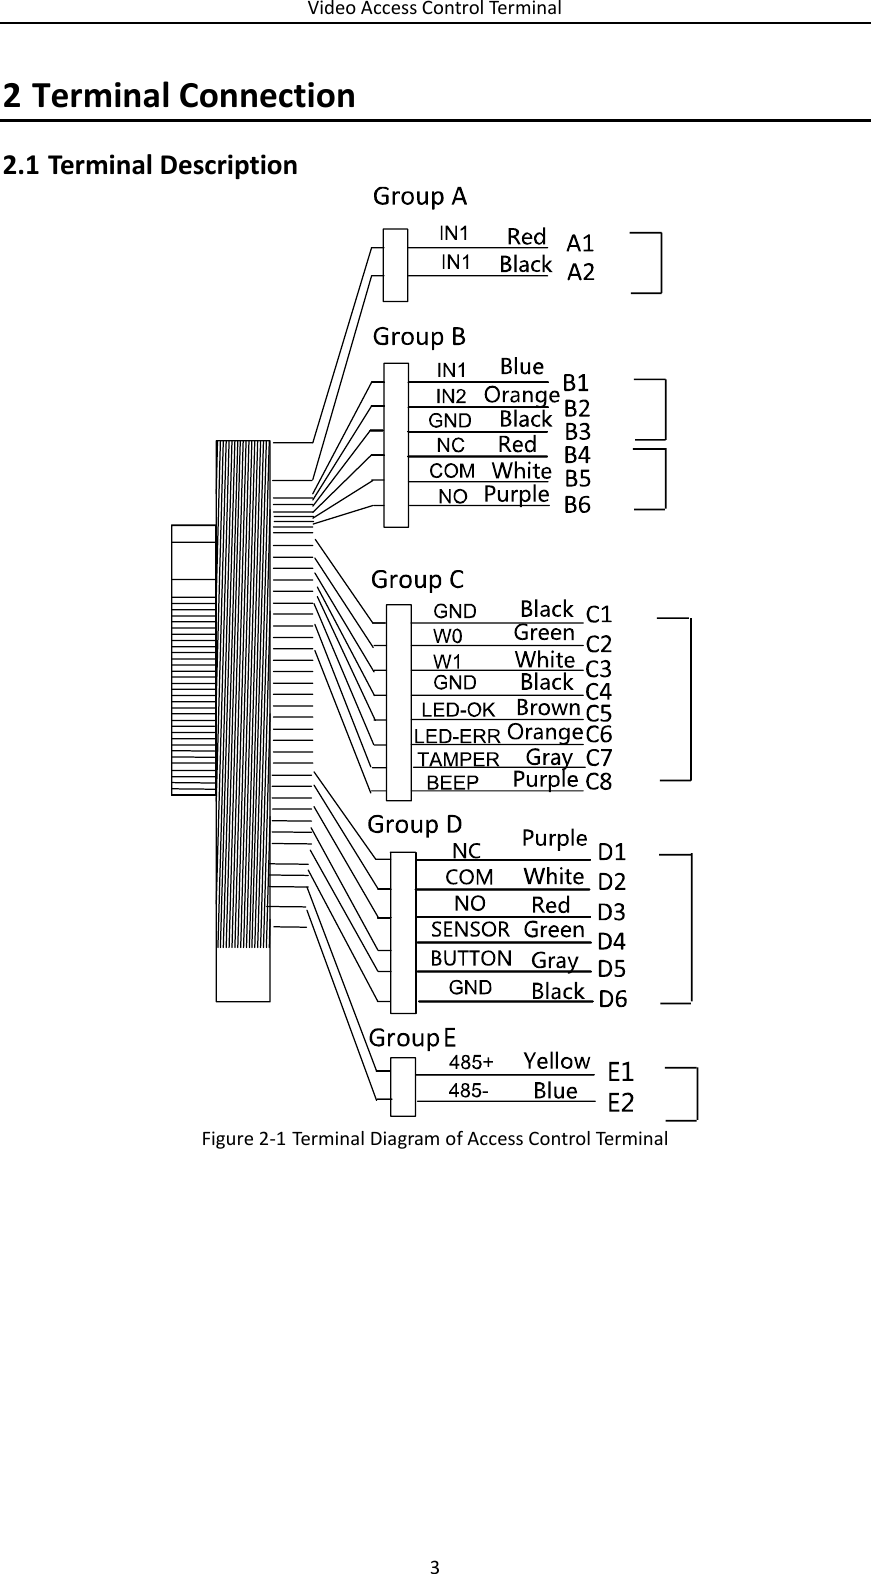 Video Access Control Terminal 3  2 Terminal Connection   Terminal Description 2.1 Figure 2-1 Terminal Diagram of Access Control Terminal     